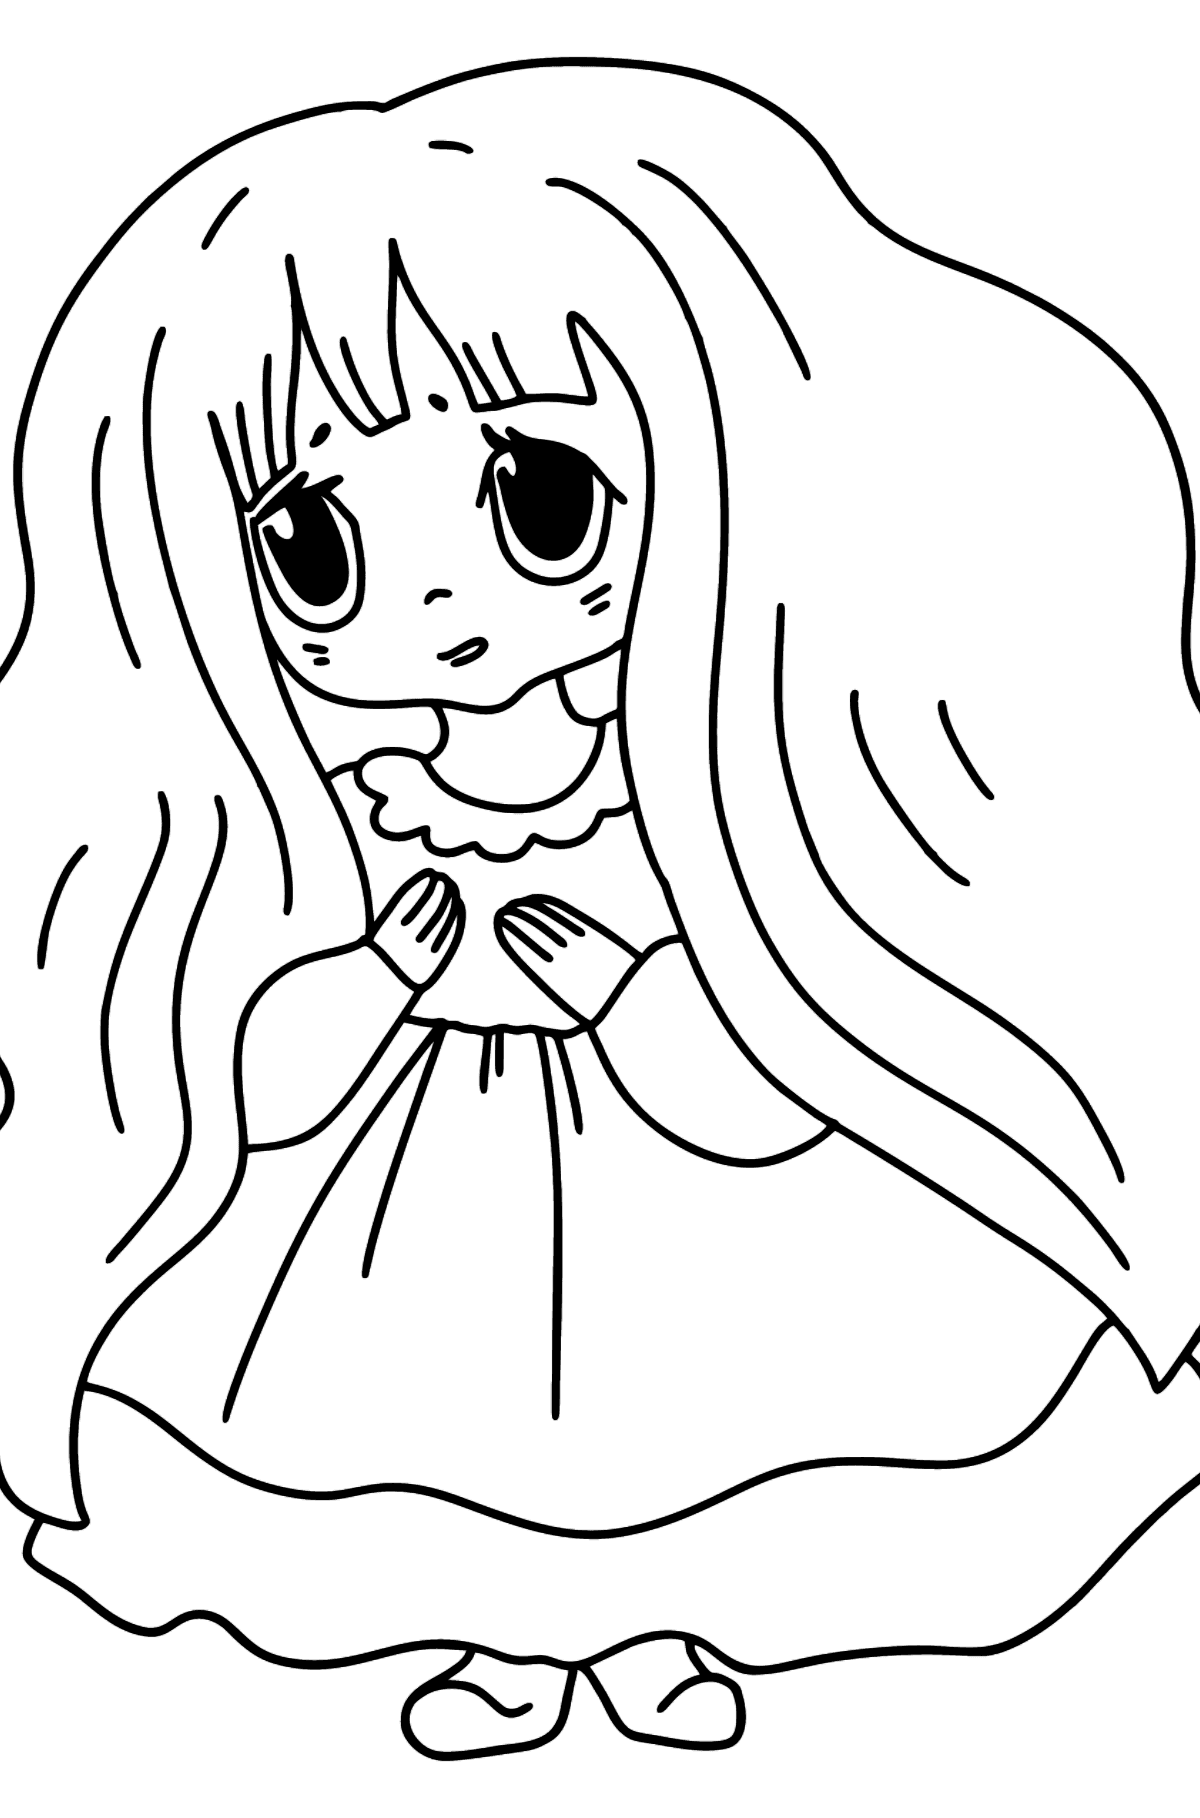 Anime trist jente tegning til fargelegging - Tegninger til fargelegging for barn